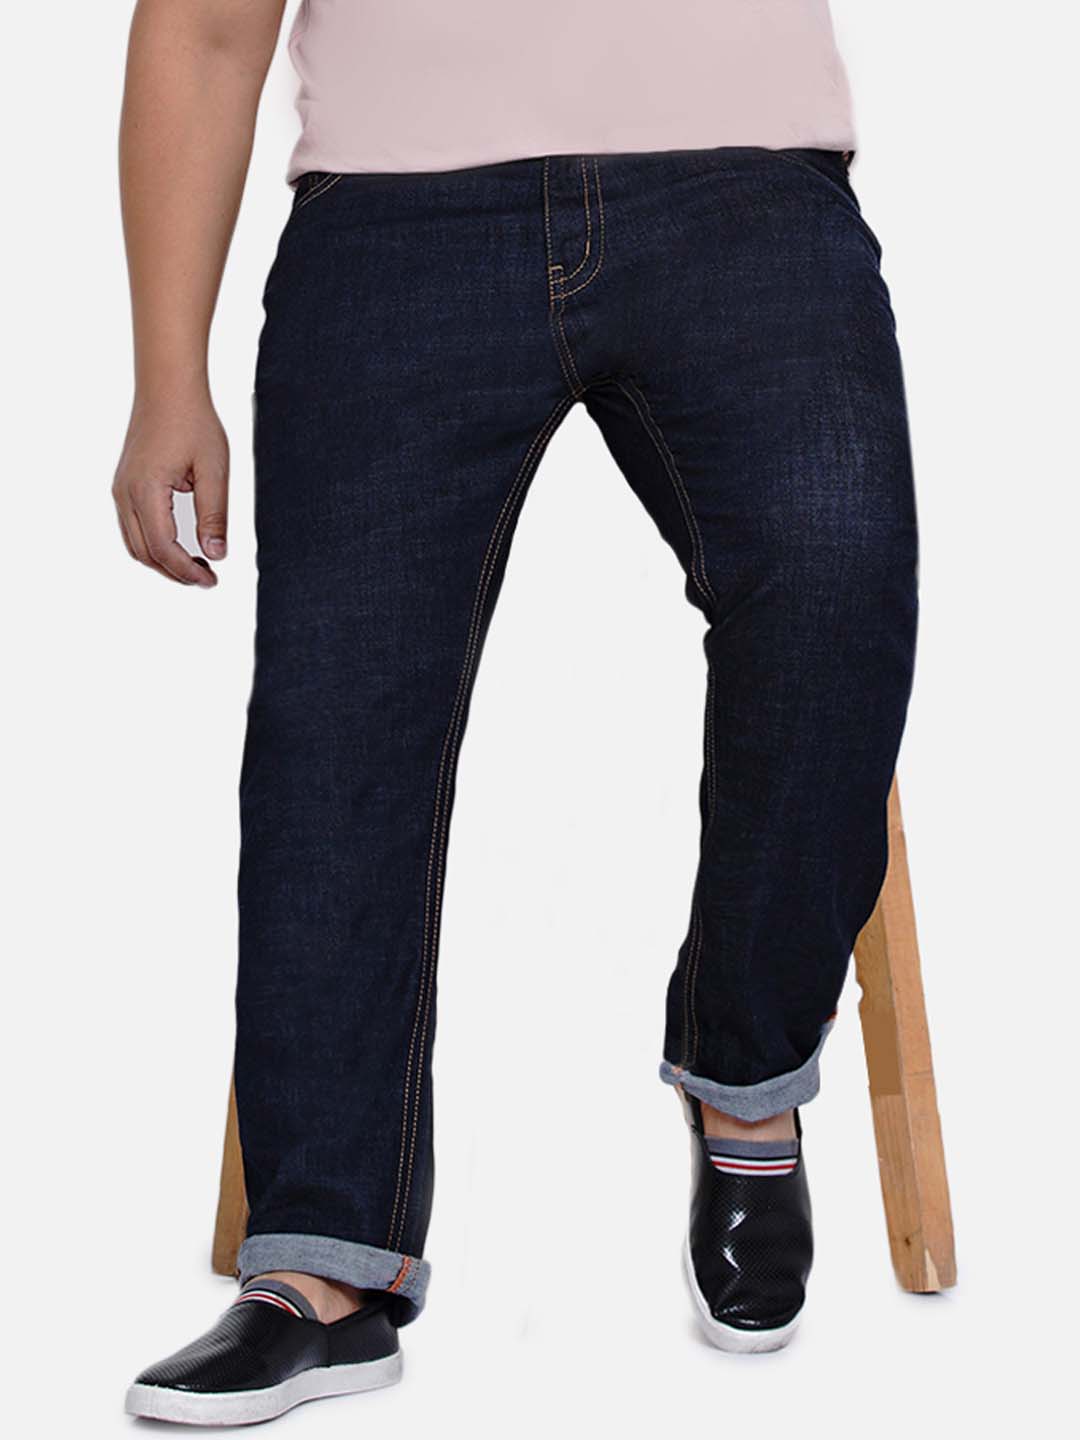 bottomwear/jeans/JPJ6035/jpj6035-1.jpg